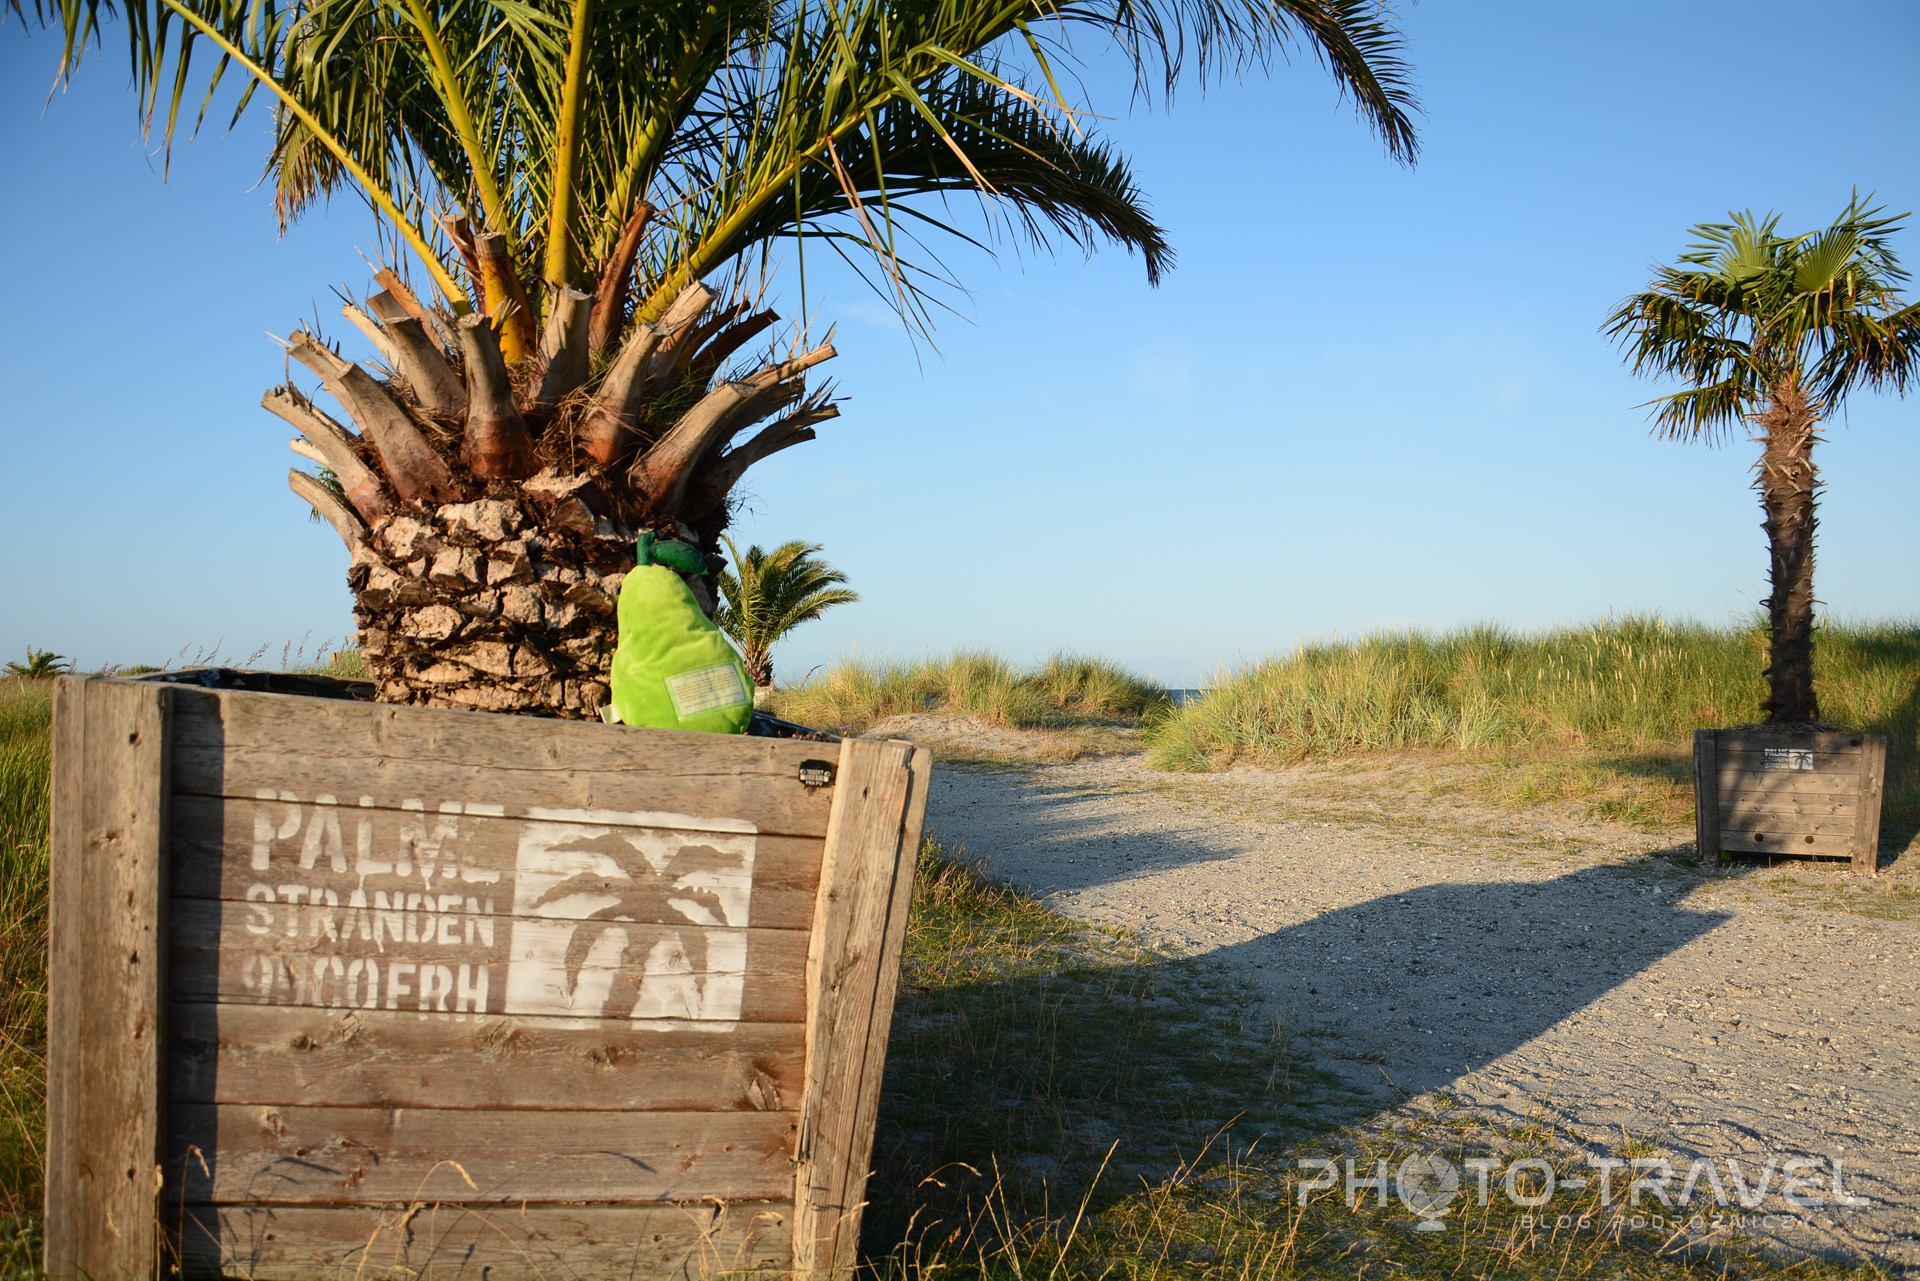 Palmenstranden w Frederikshavn to jedyna plaża w Danii z prawdziwymi palmami! 